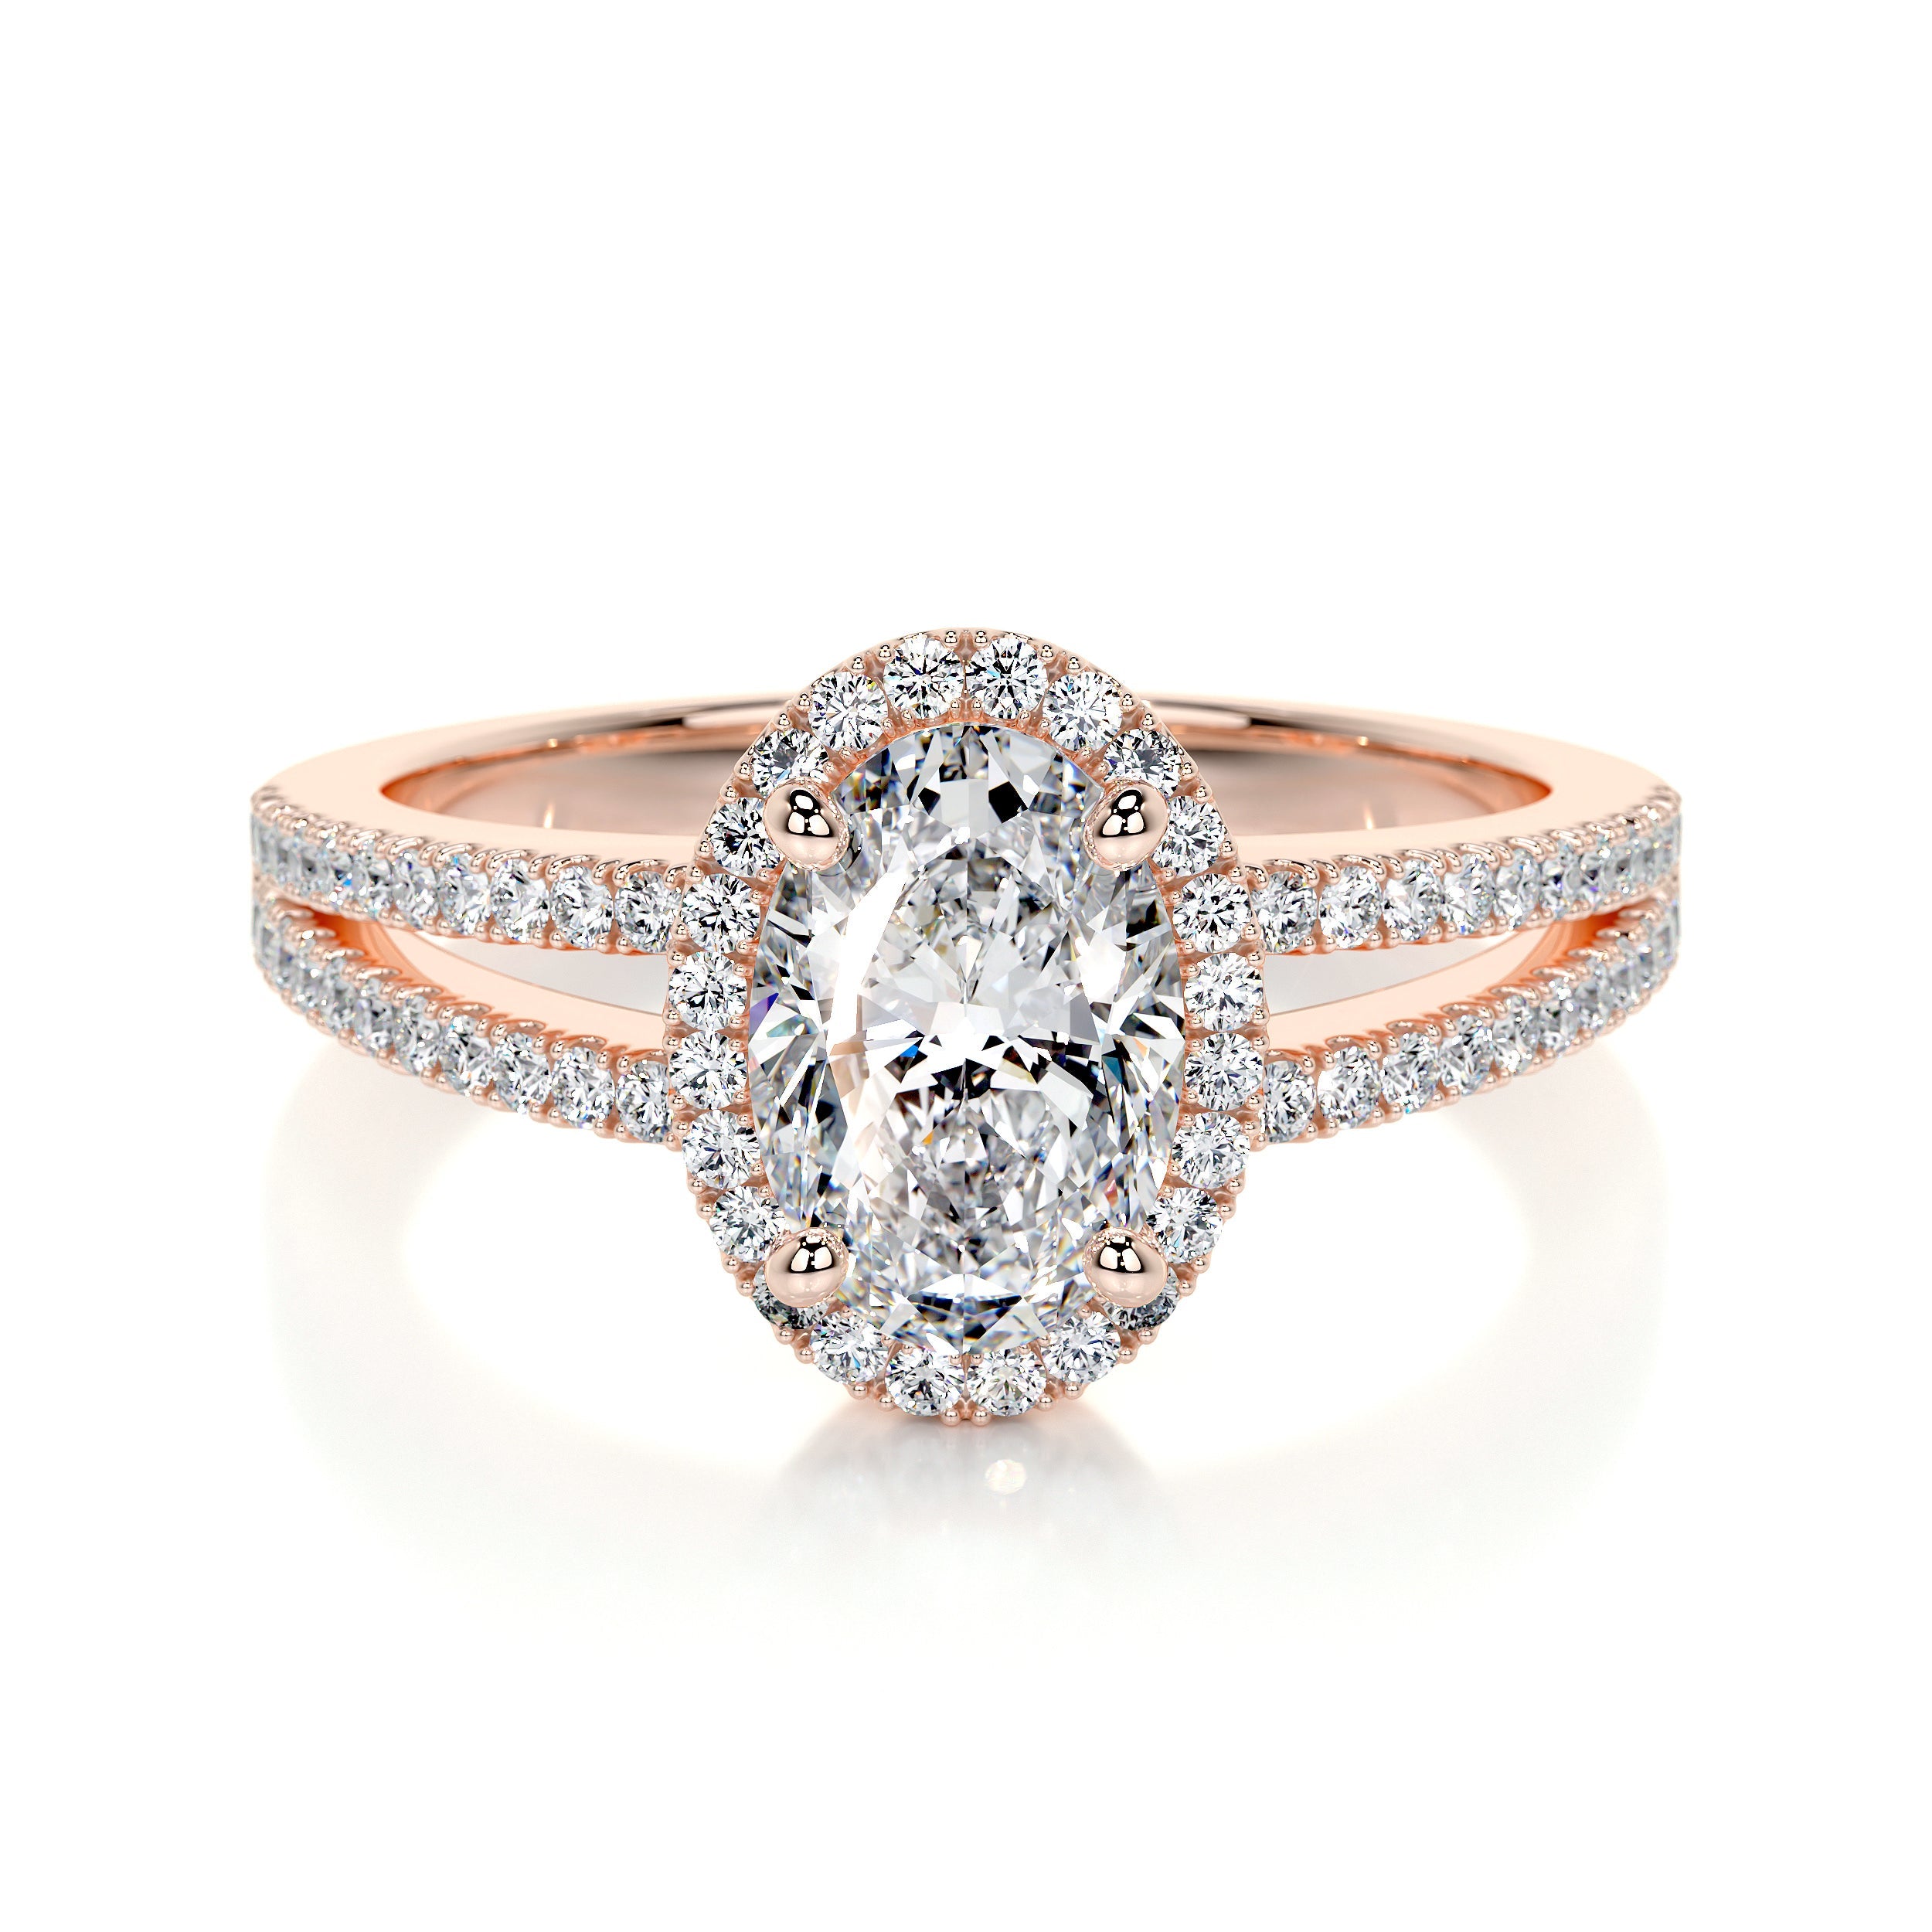 Brielle Lab Grown Diamond Ring   (1.2 Carat) -14K Rose Gold